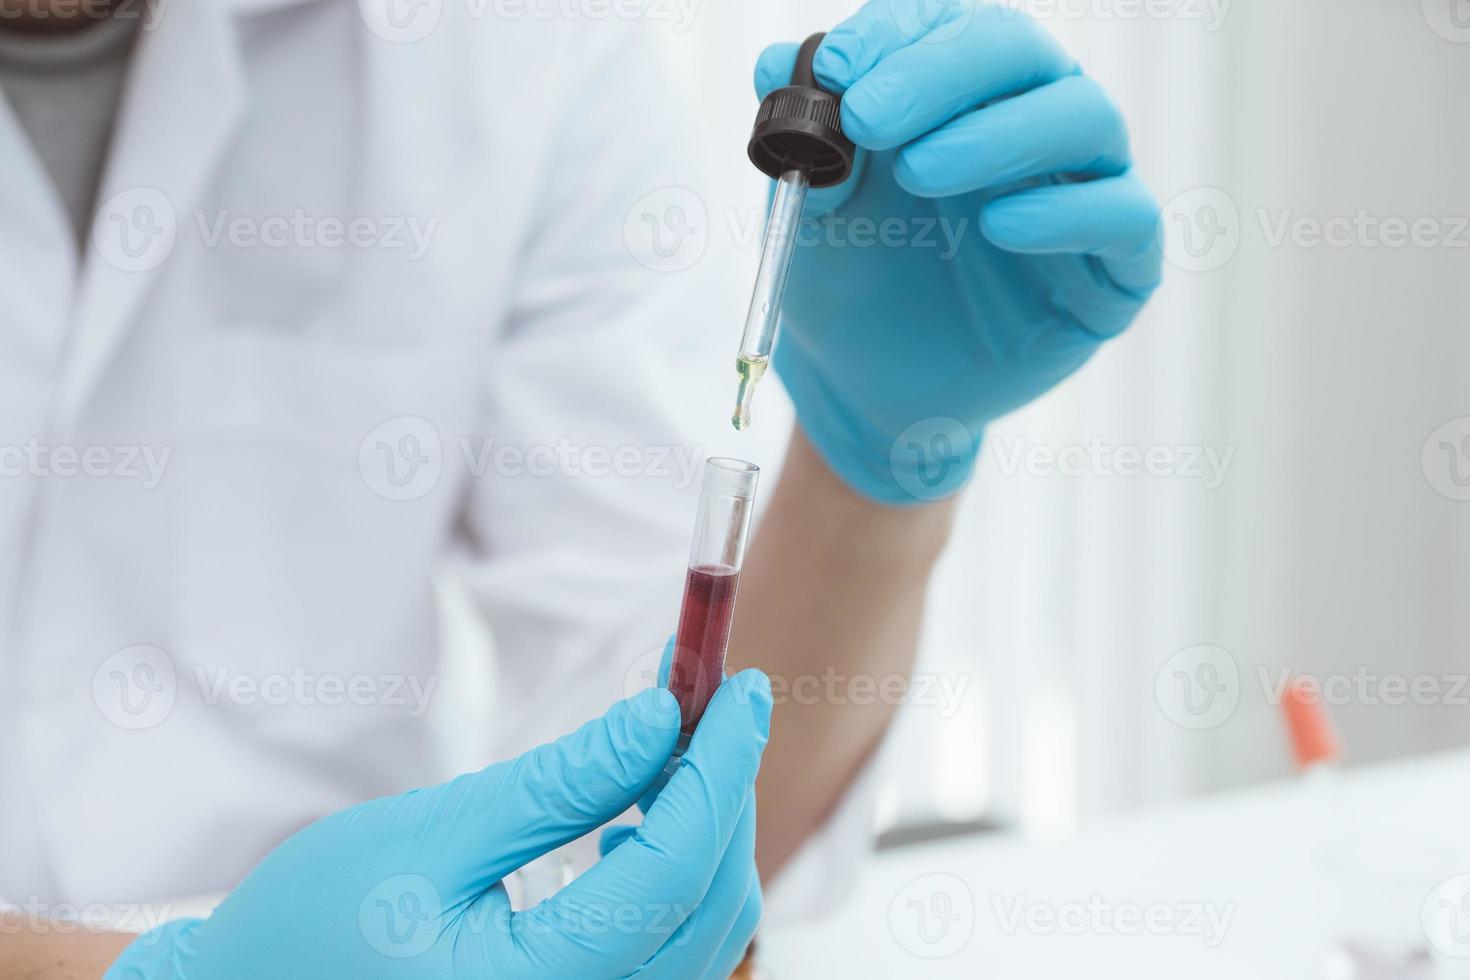 microbiologiste ou médecin scientifique portant des vêtements de protection contre les risques biologiques avec un tube d'échantillon biologique contaminé coronavirus covid 19 échantillon de sang infecté. photo